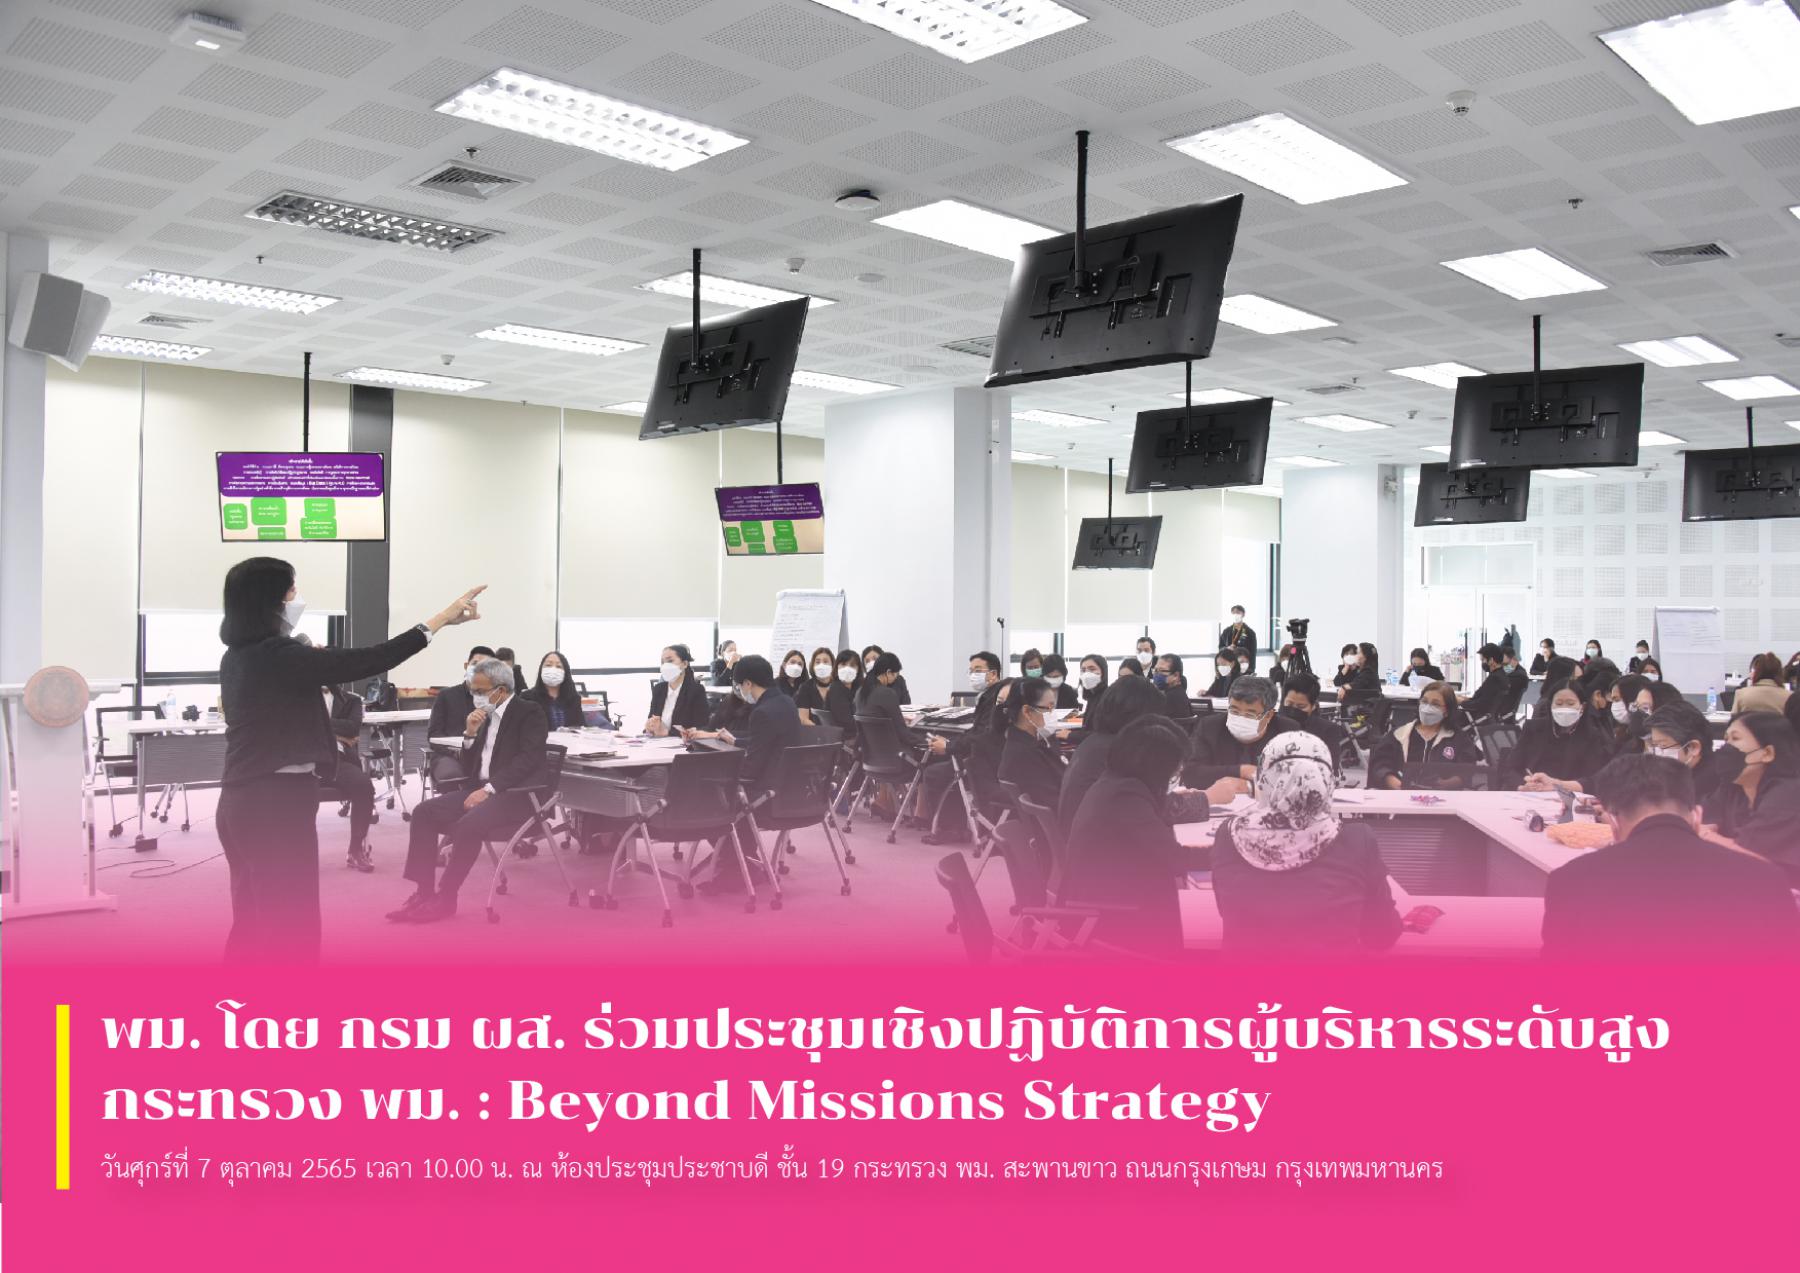 พม. โดย กรม ผส. ร่วมประชุมเชิงปฏิบัติการผู้บริหารระดับสูง กระทรวง พม. : Beyond Missions Strategy